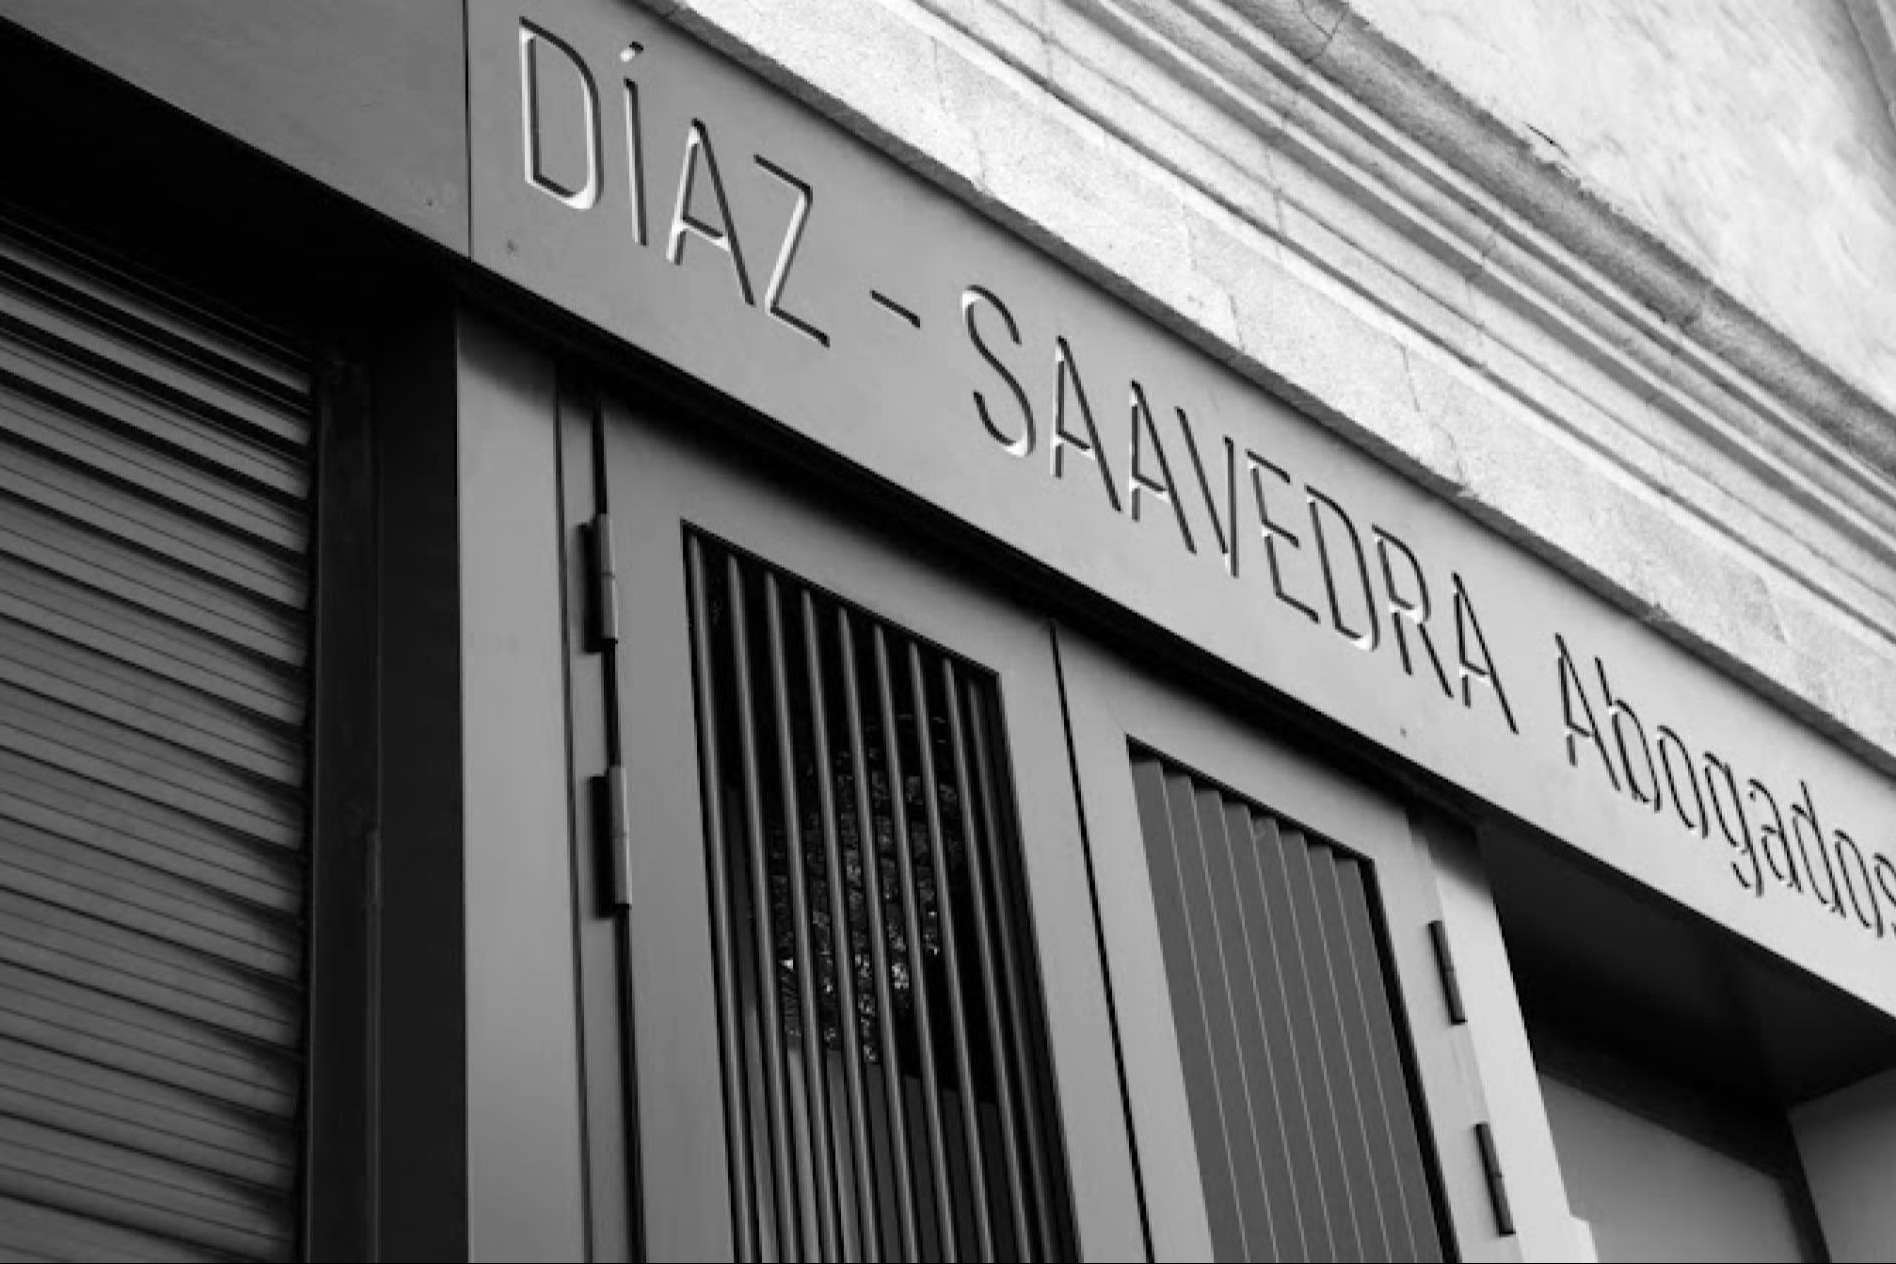  Díaz-Saavedra & Yánez Abogados, despacho jurídico de referencia en Las Palmas de Gran Canarias 